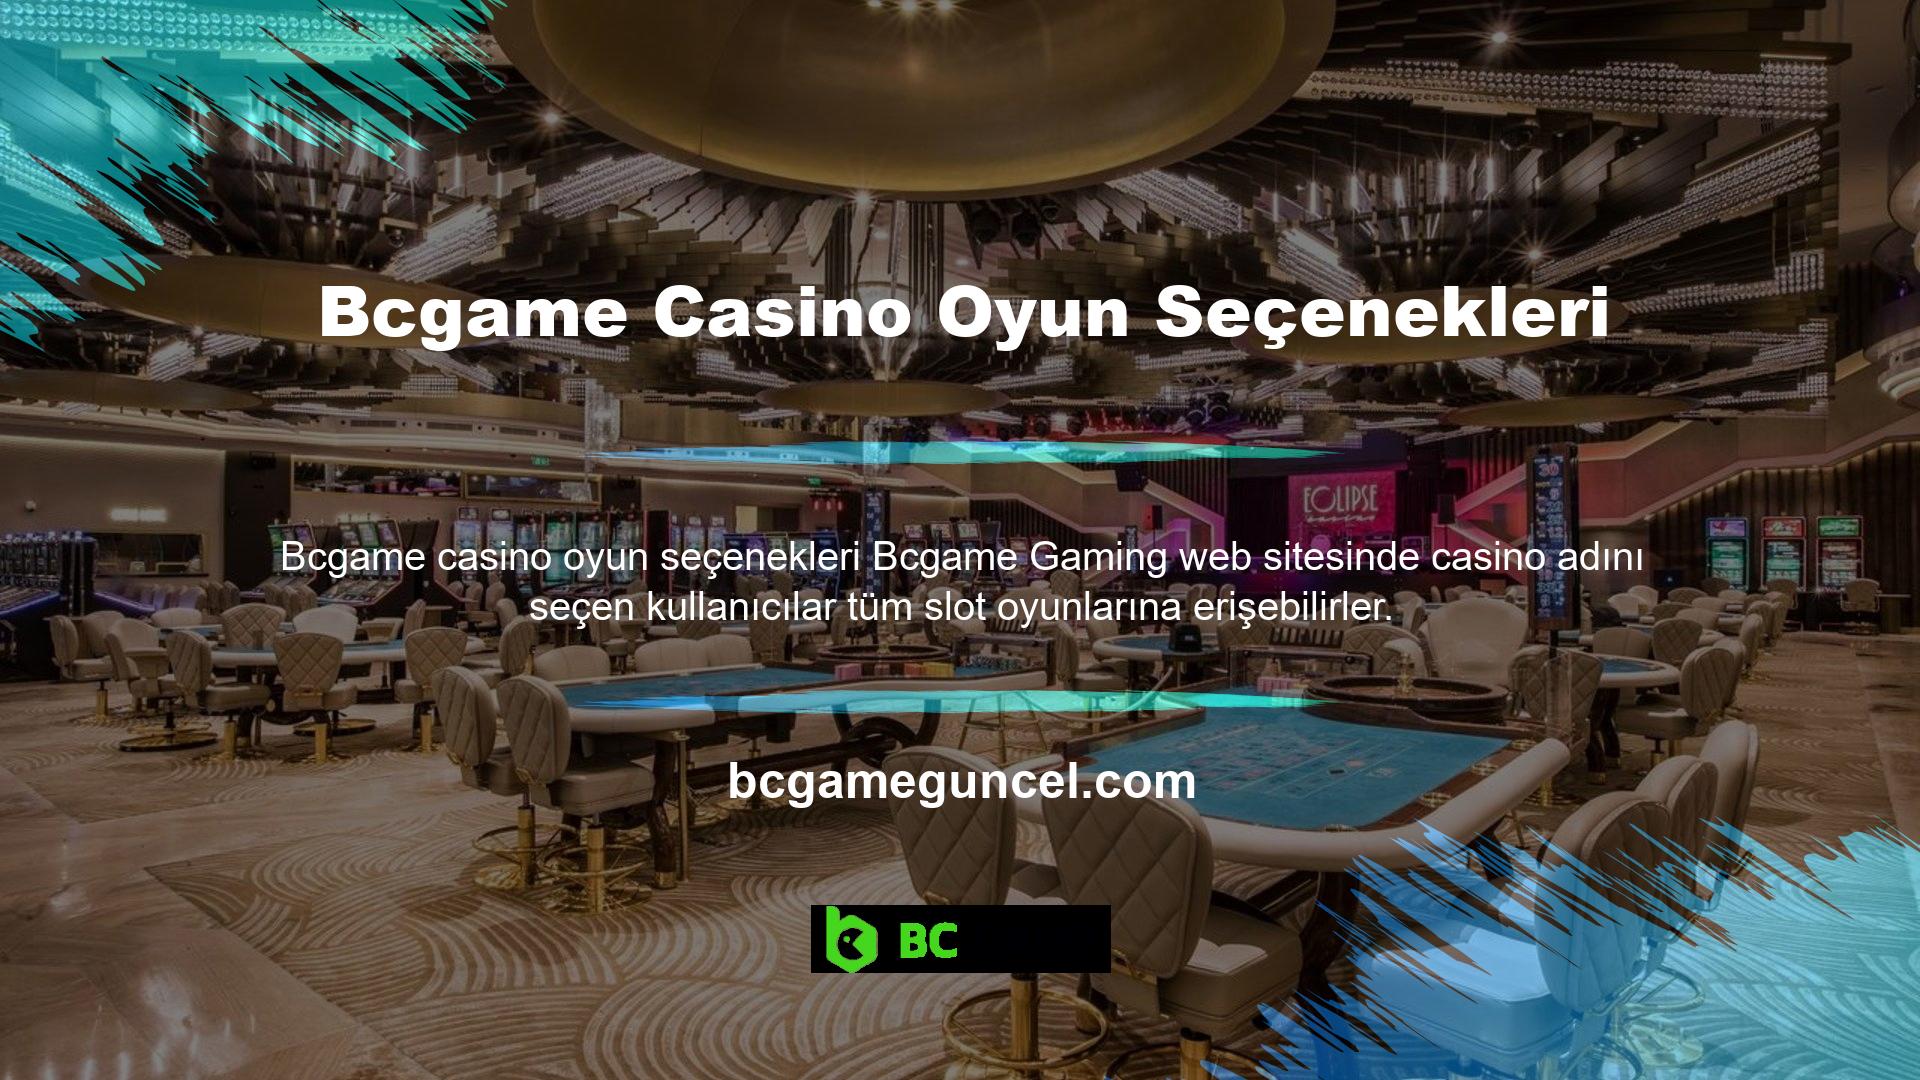 Slot Bcgame casino oyun seçeneklerini sorunsuz bir şekilde oynayabilmek için güvenilir kayıt adreslerini bilmeniz ve bu adreslere erişerek kullanıcı kayıt işlemini tamamlamanız gerekmektedir